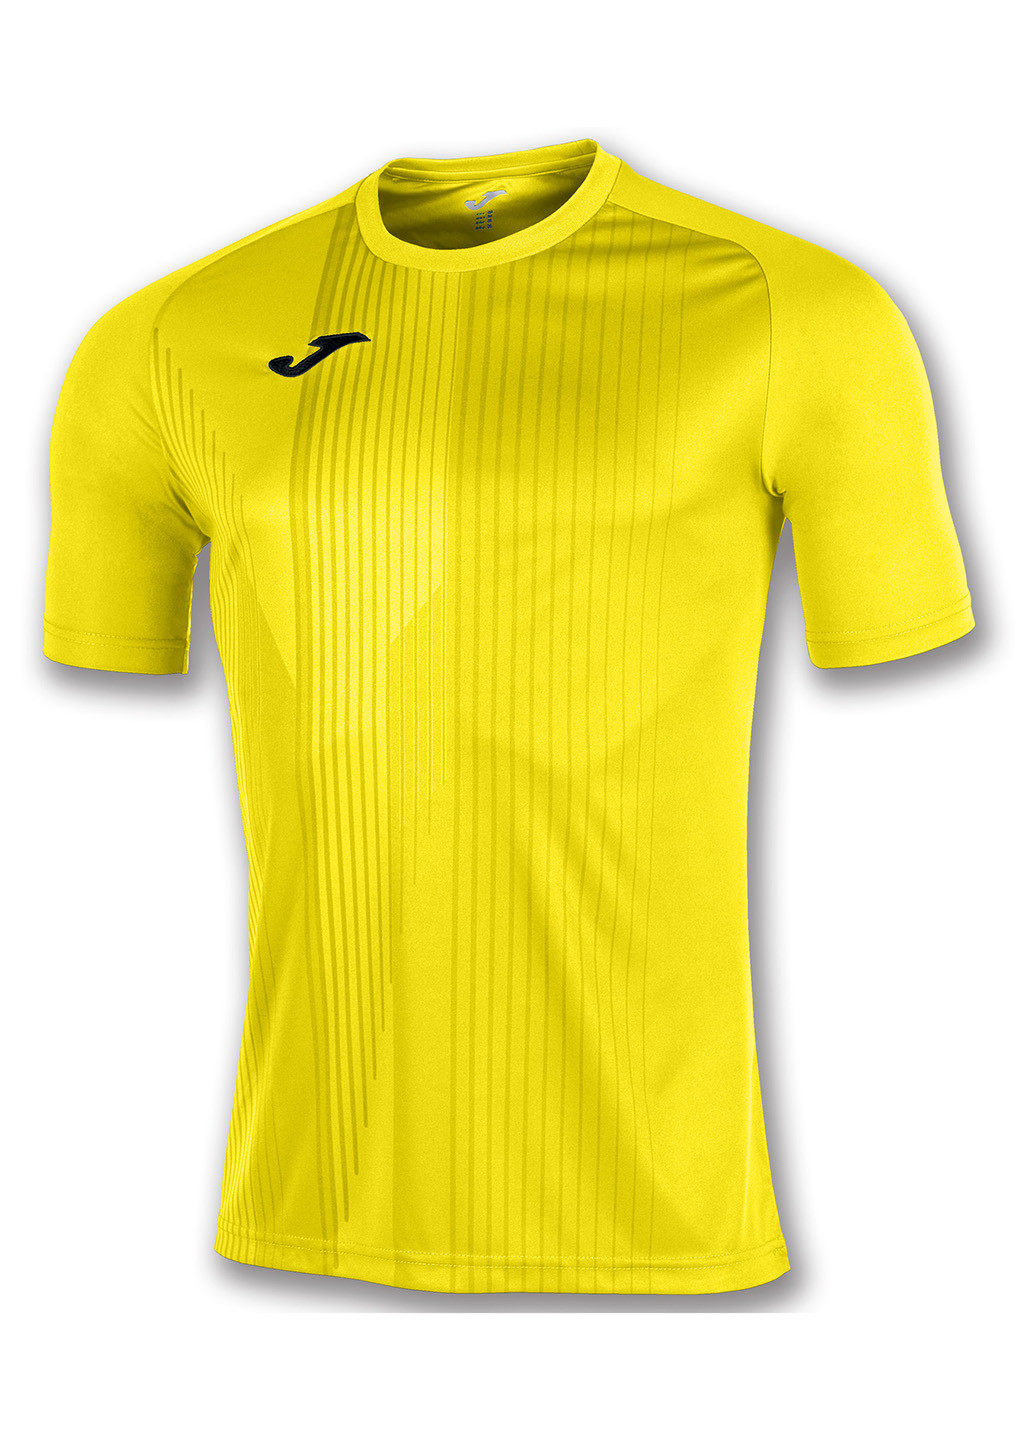 Желтая футболка с коротким рукавом Joma